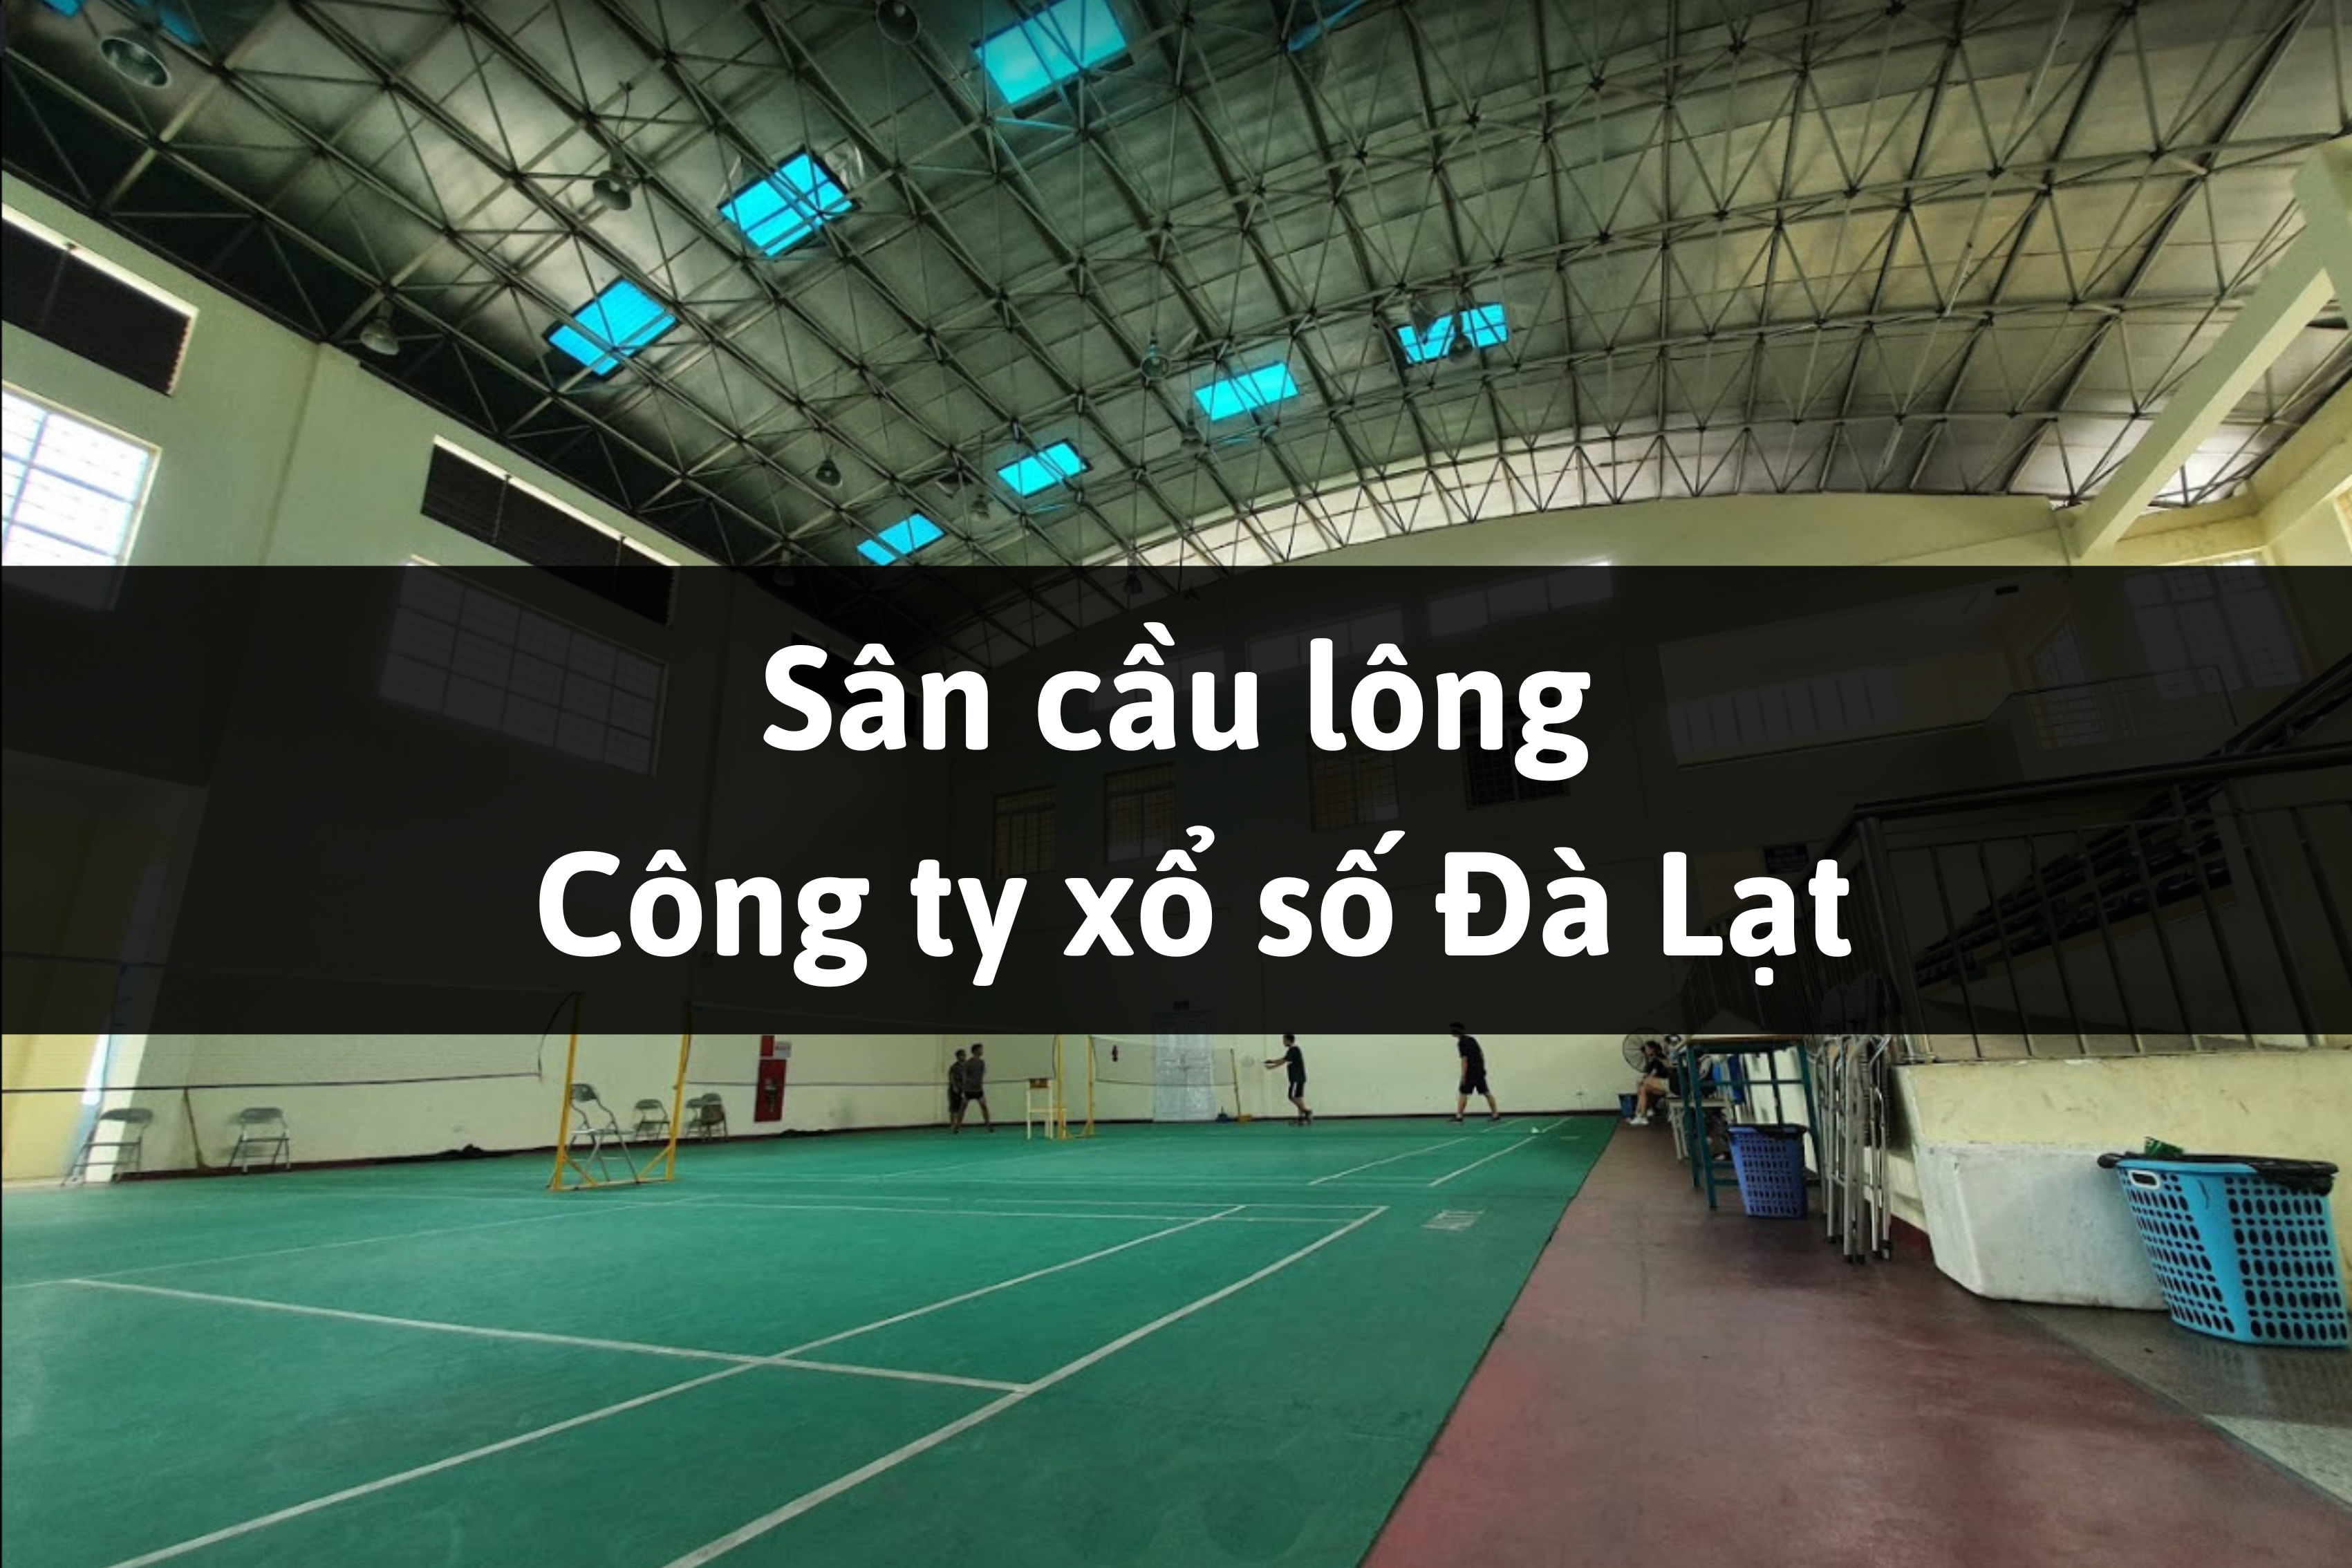 Sân cầu lông Công ty xổ số Đà Lạt, Lâm